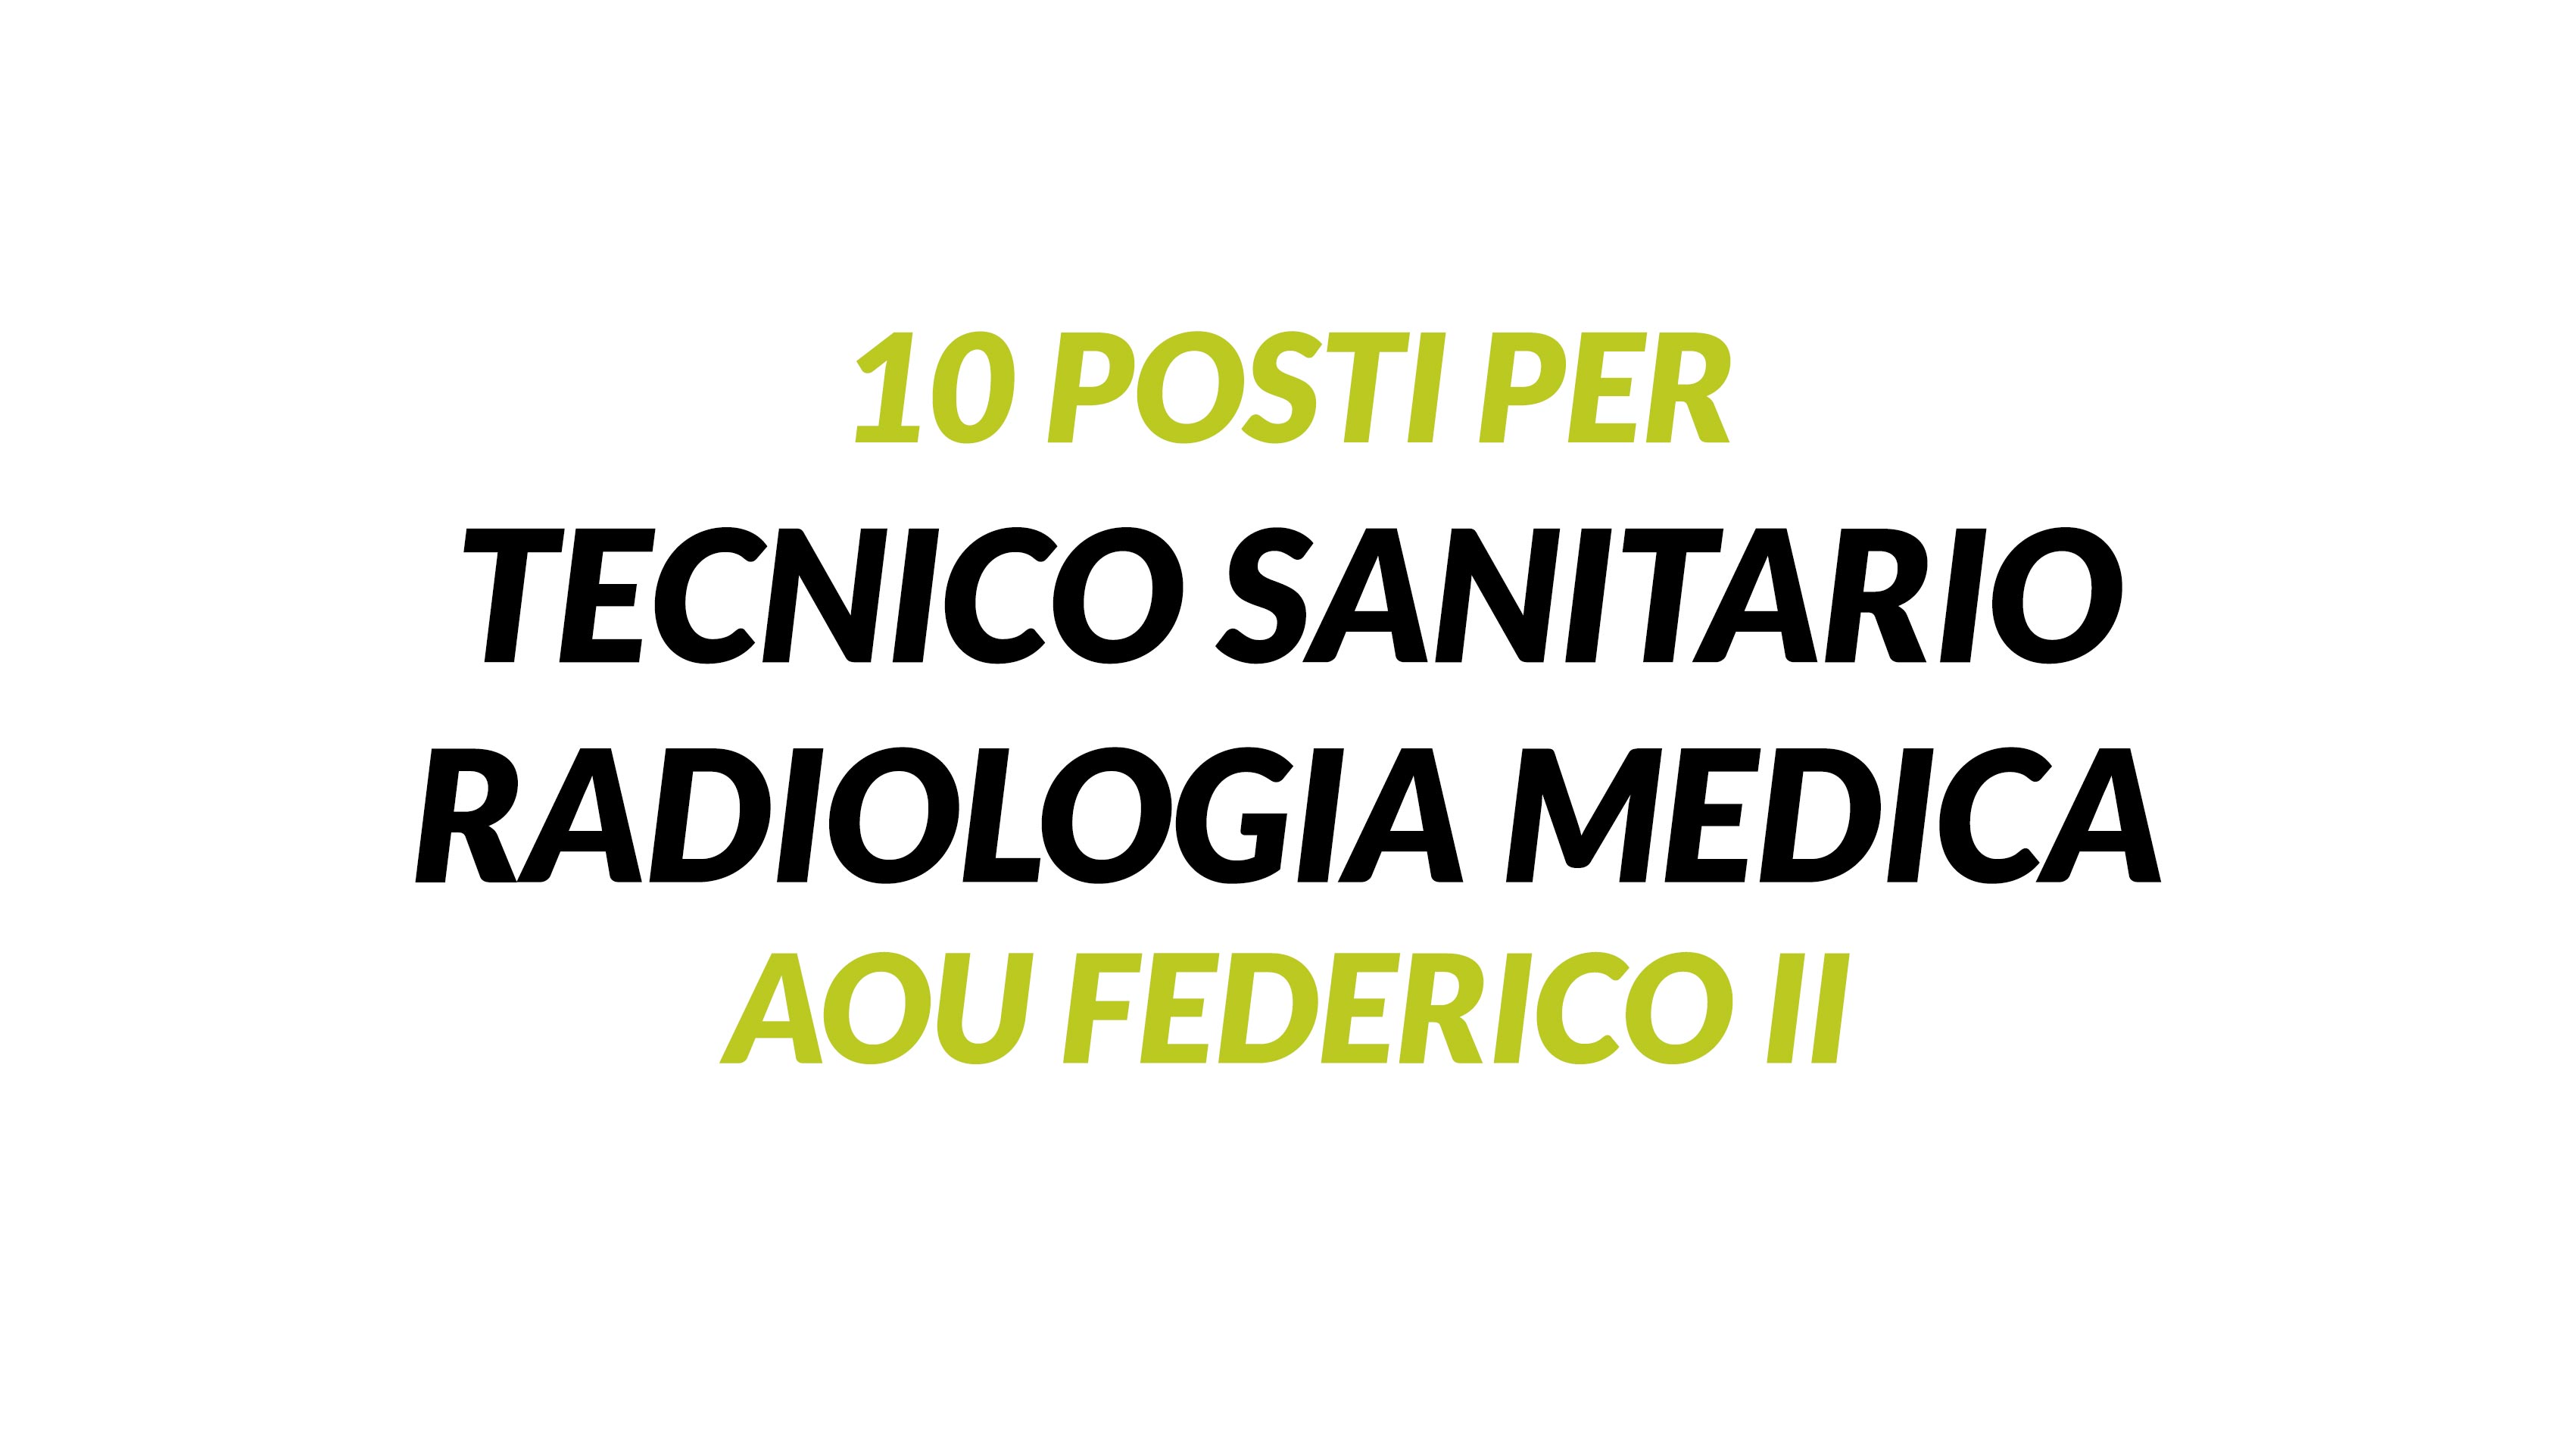 10 posti per TECNICO SANITARIO RADIOLOGIA MEDICA Napoli FEDERICO II concorso 2019